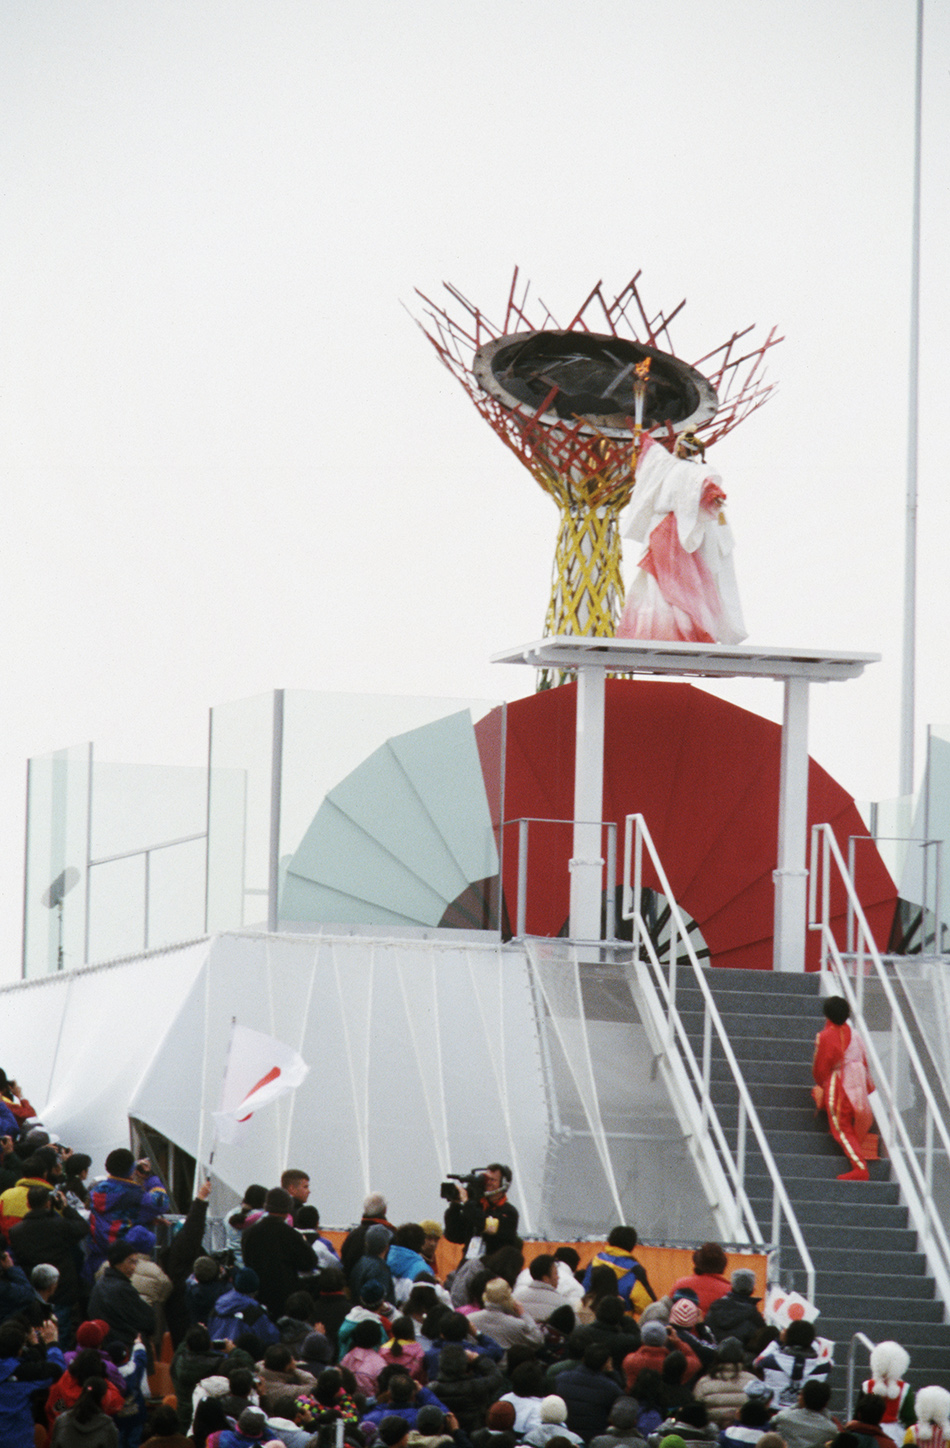 1998年冬奥会图片